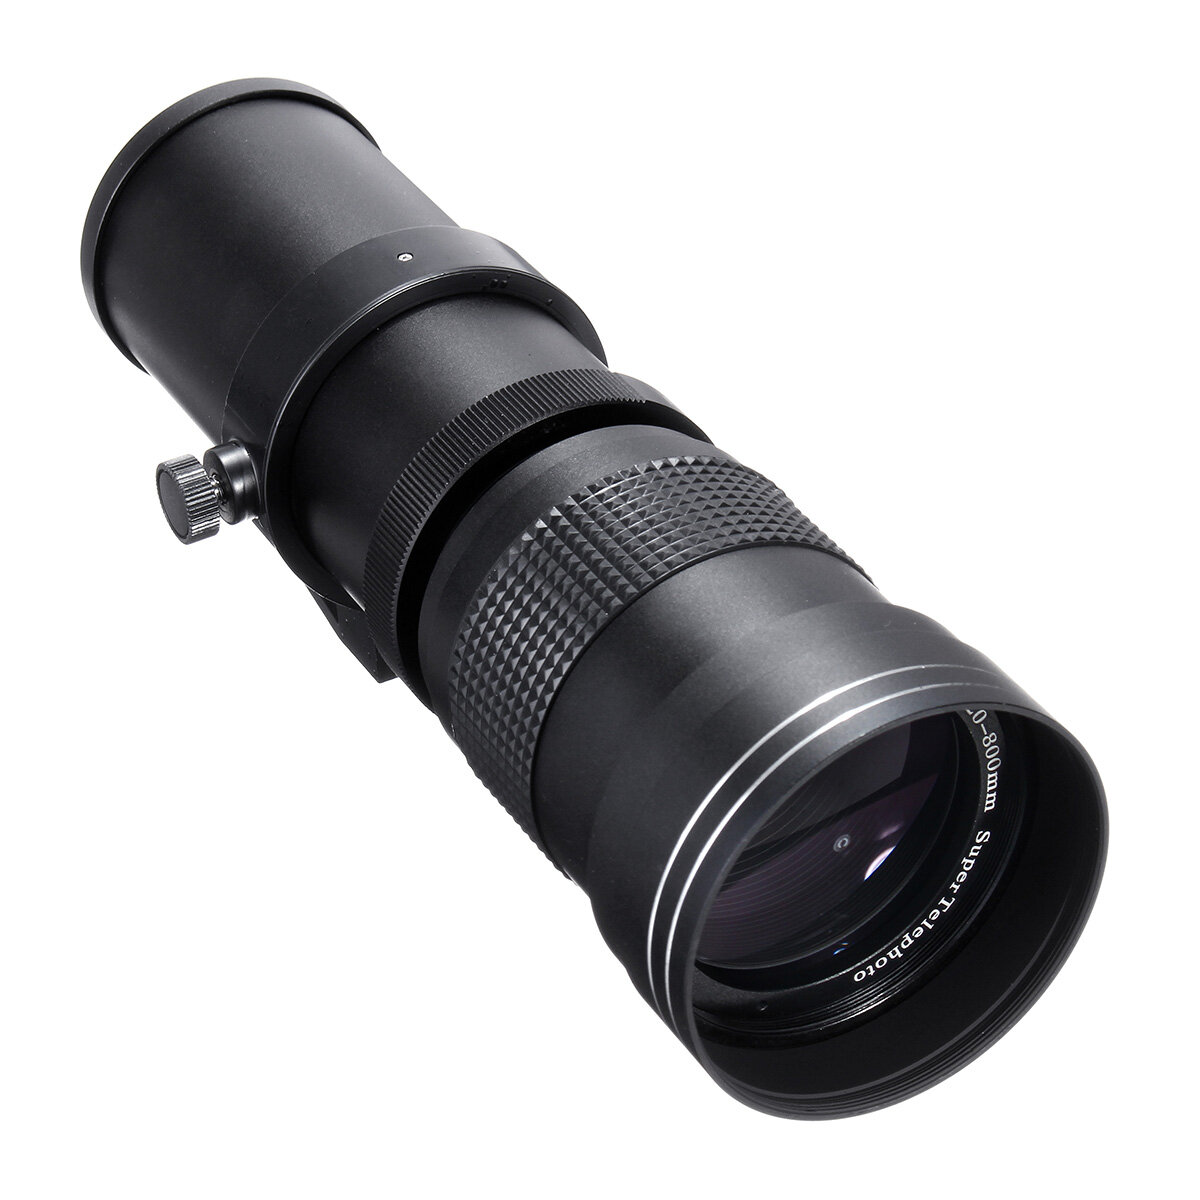 IPRee® 420-800mm F / 8.3-16 Super teleobiettivo lente Zoom manuale lente + T-Mount per Nikon Per Sony Per Pentax SLR fotografica